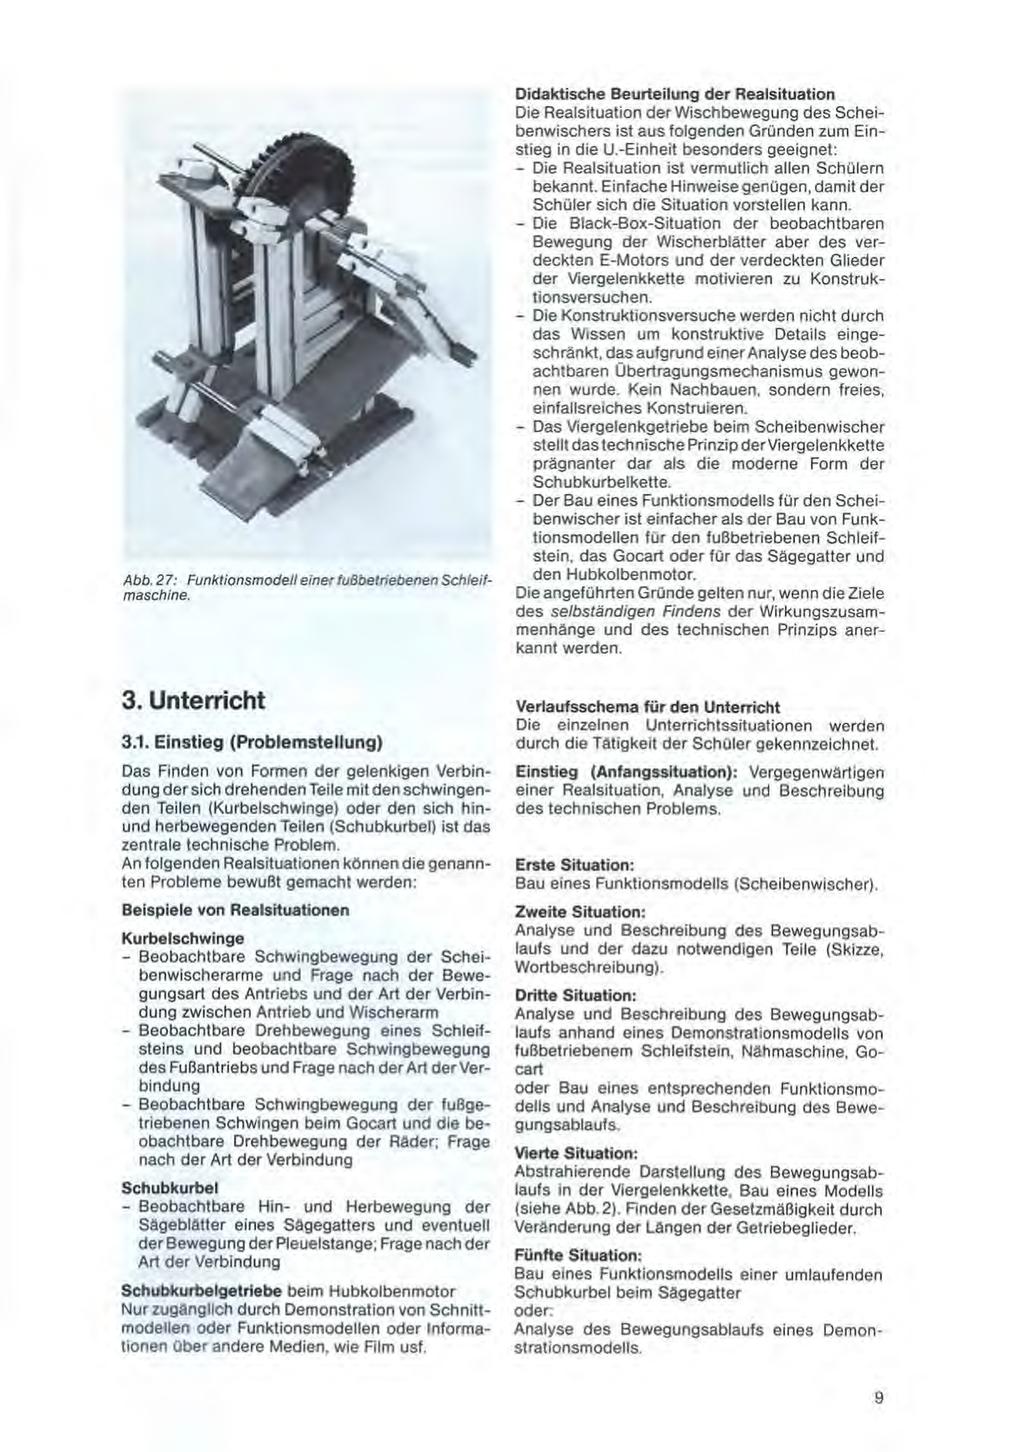 Abb. 27: Funktionsmodell einer fußbetriebenen Schleifmaschine.